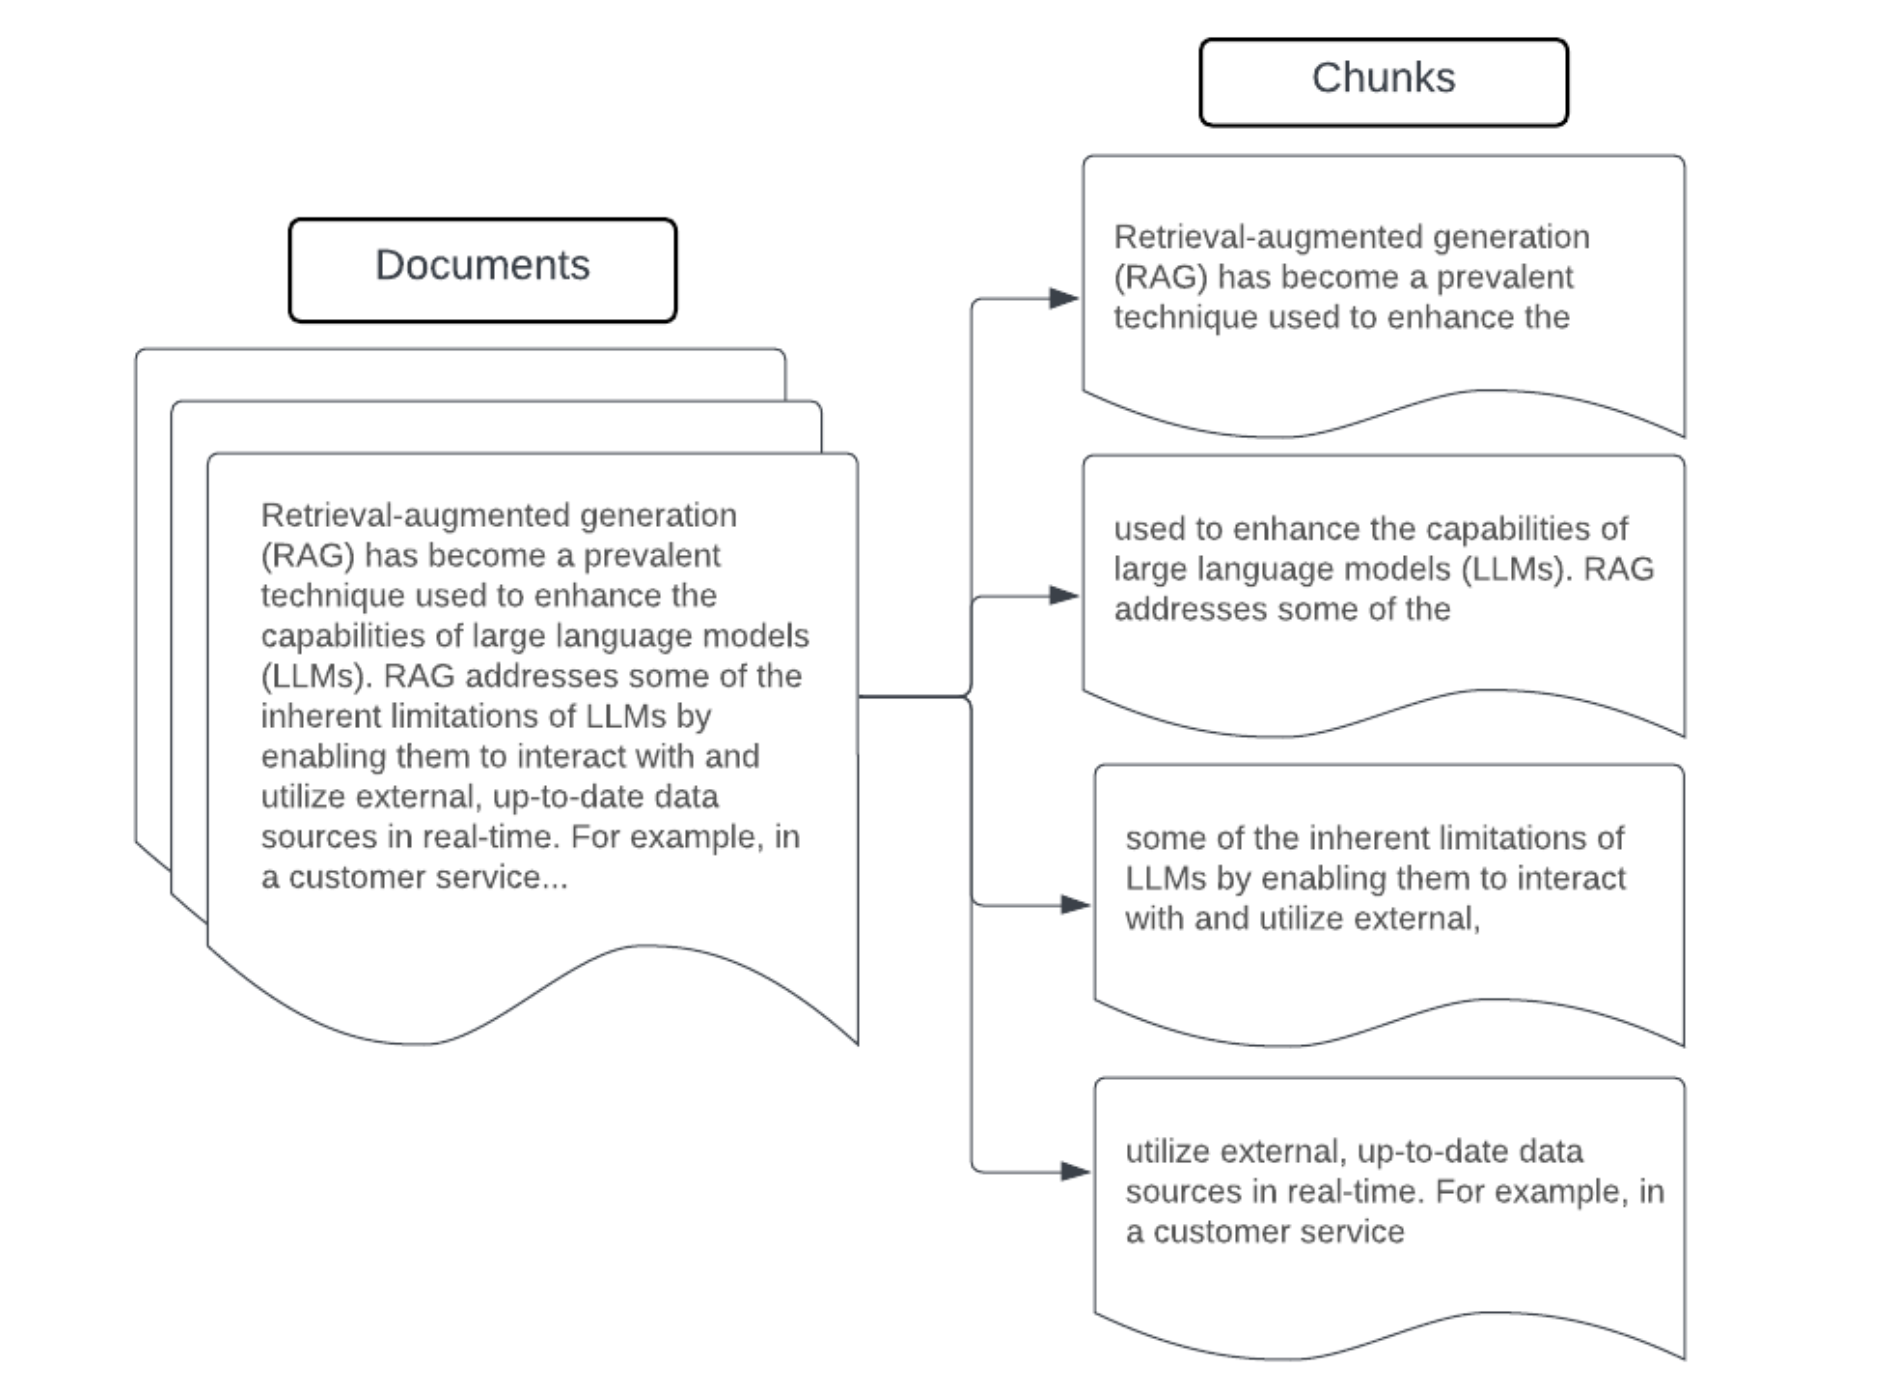 Imagem mostrando um exemplo de chunking de tamanho fixo de um documento.